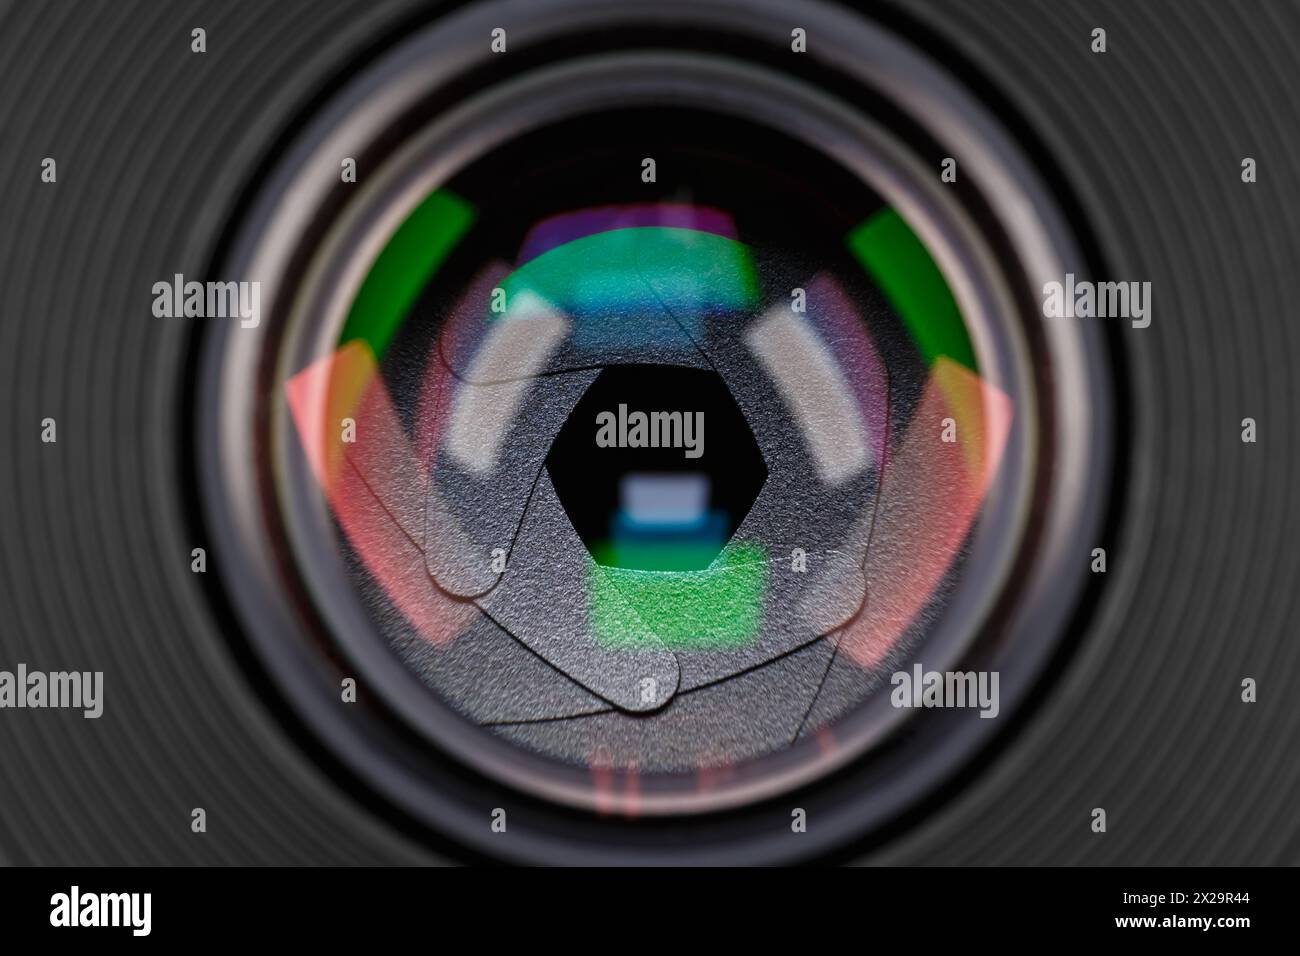 Blendenblende eines fotografischen Objektivs mit Farbreflexionen aus der Nähe. Stockfoto